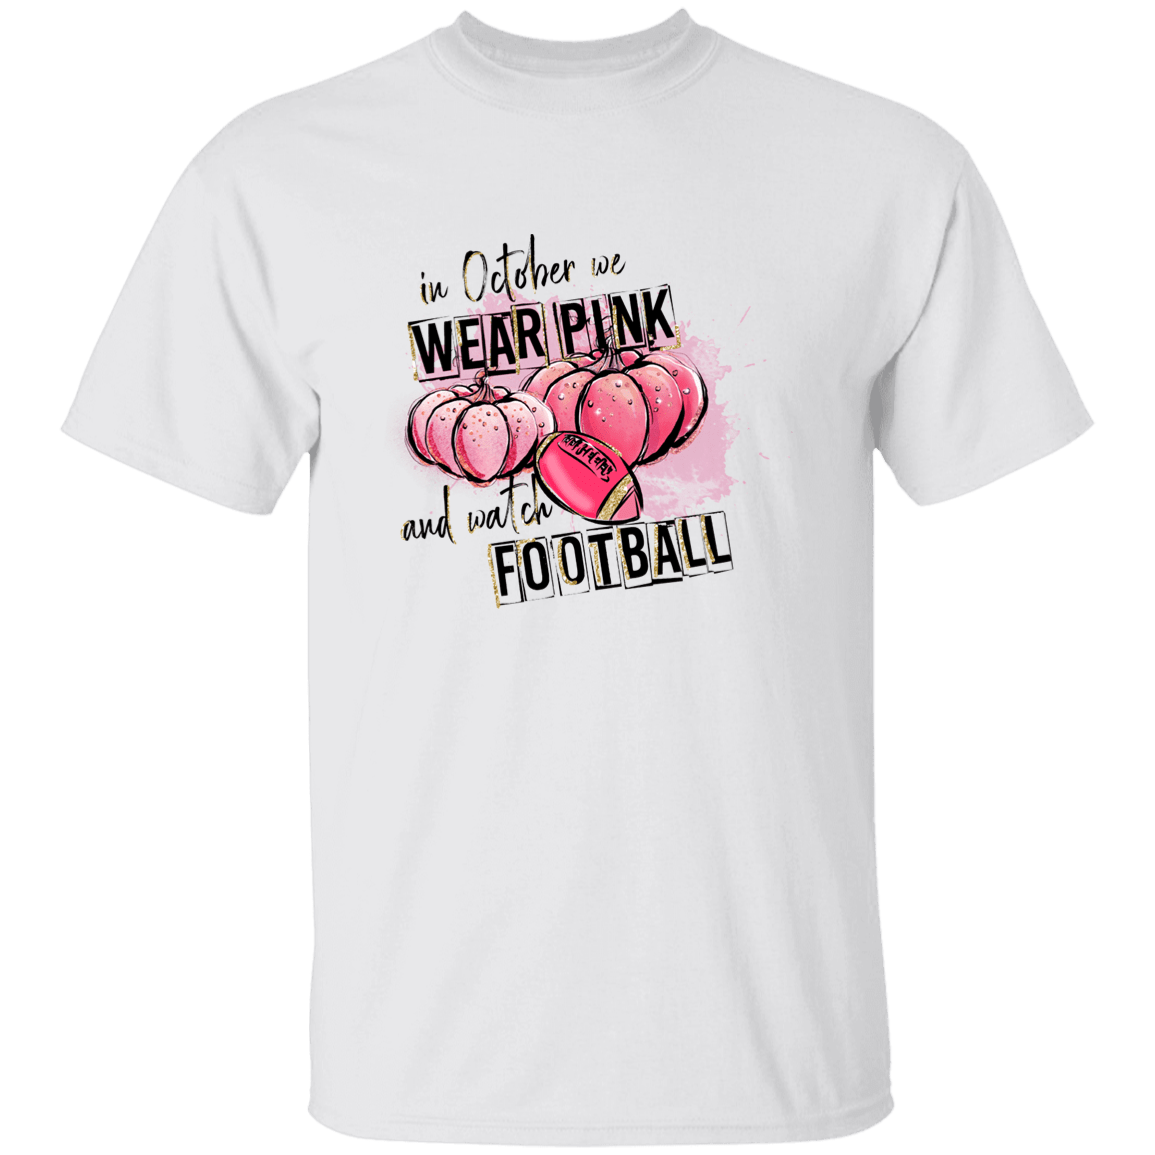 October We Wear Pink/Football T Shirt